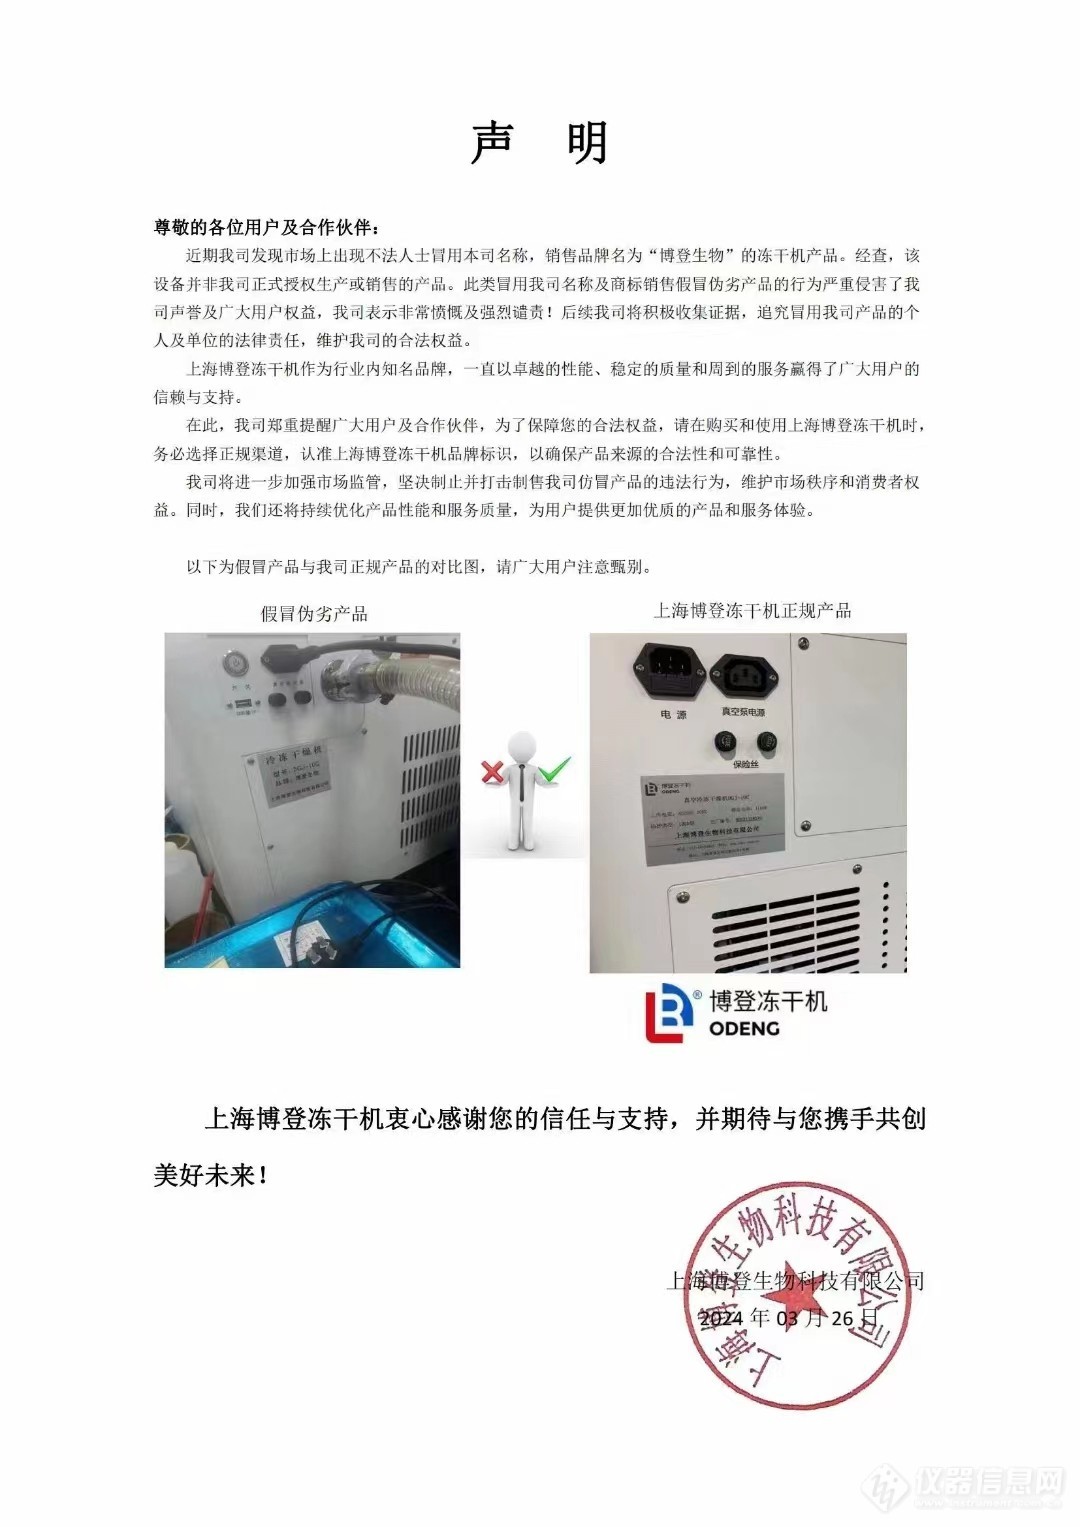 关于市场上出现仿冒上海博登冻干机设备的声明